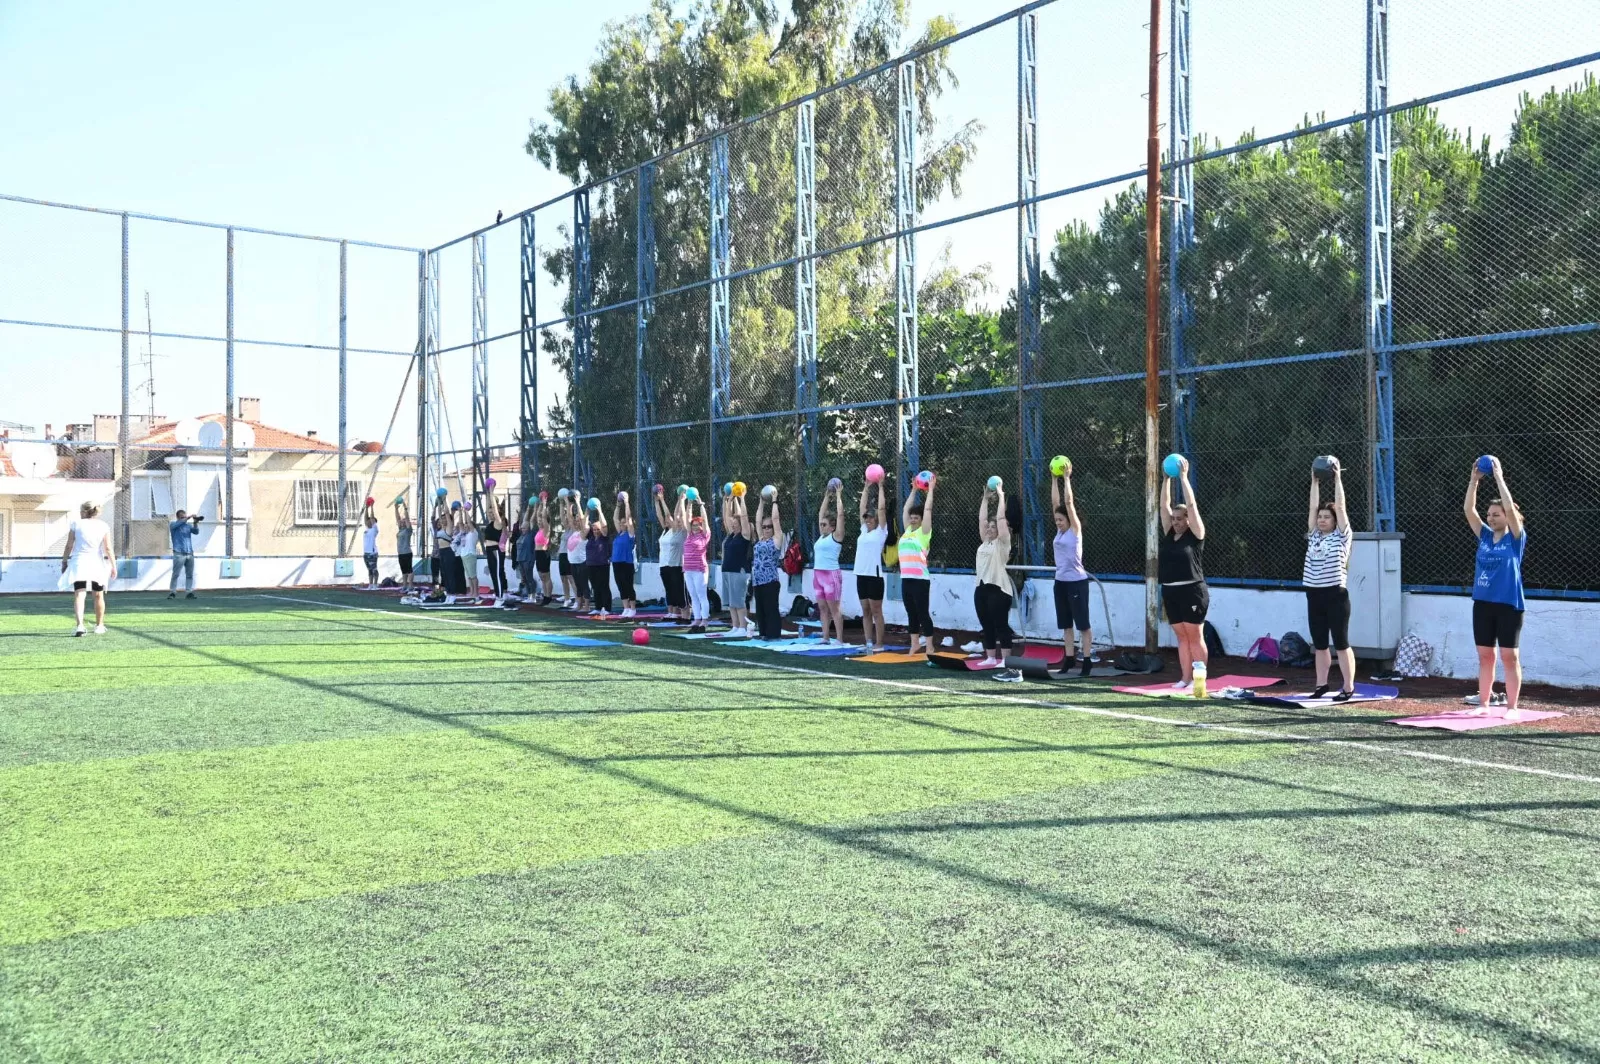 Karabağlar Belediyesi, kadınların sağlıklı ve zinde kalmaları için haftada iki gün ücretsiz pilates ve aerobik dersleri düzenliyor